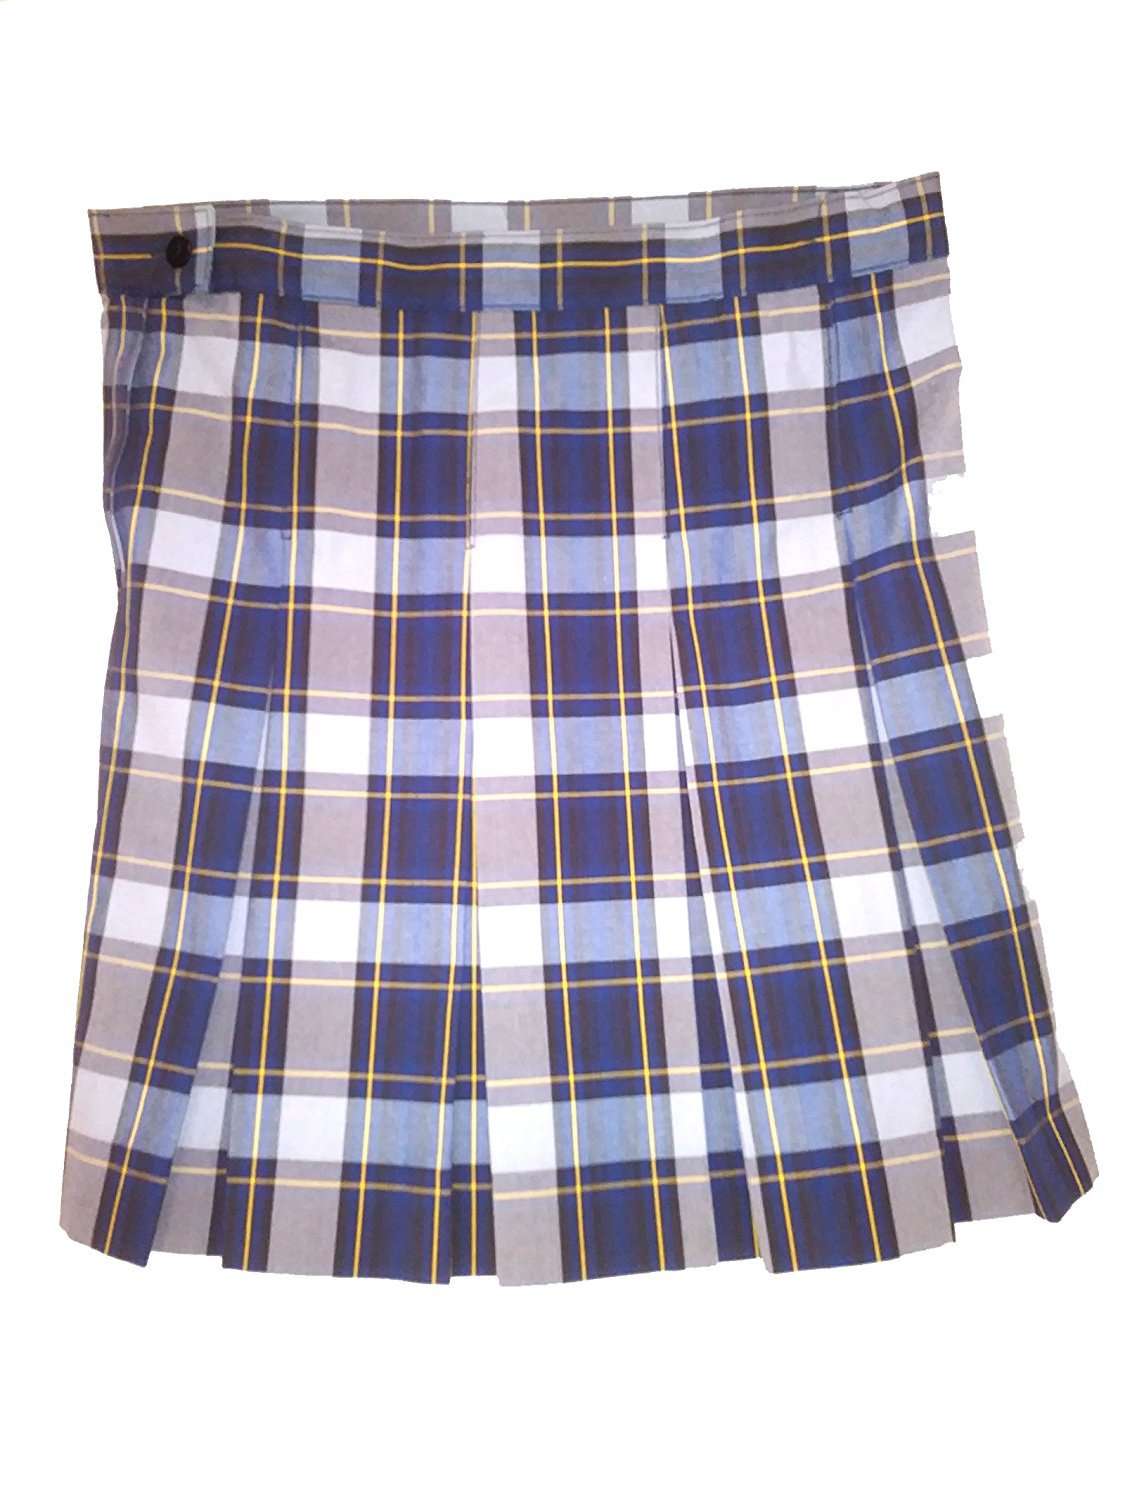 Model 1943 Color #57 School Uniform Plaid Skirt